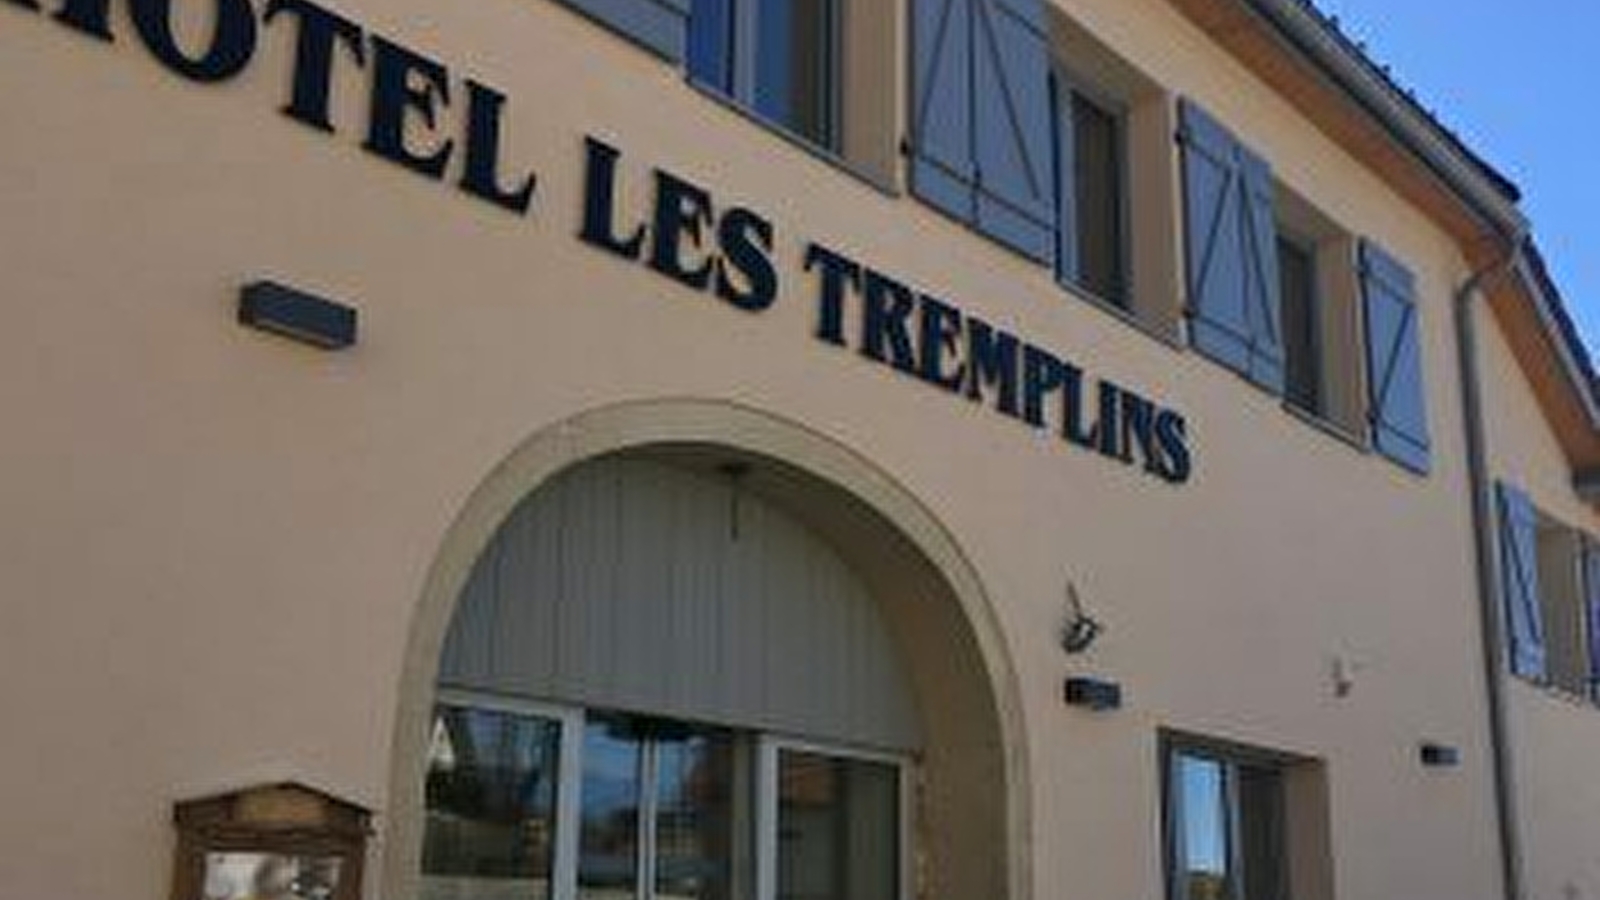 Hôtel les Tremplins